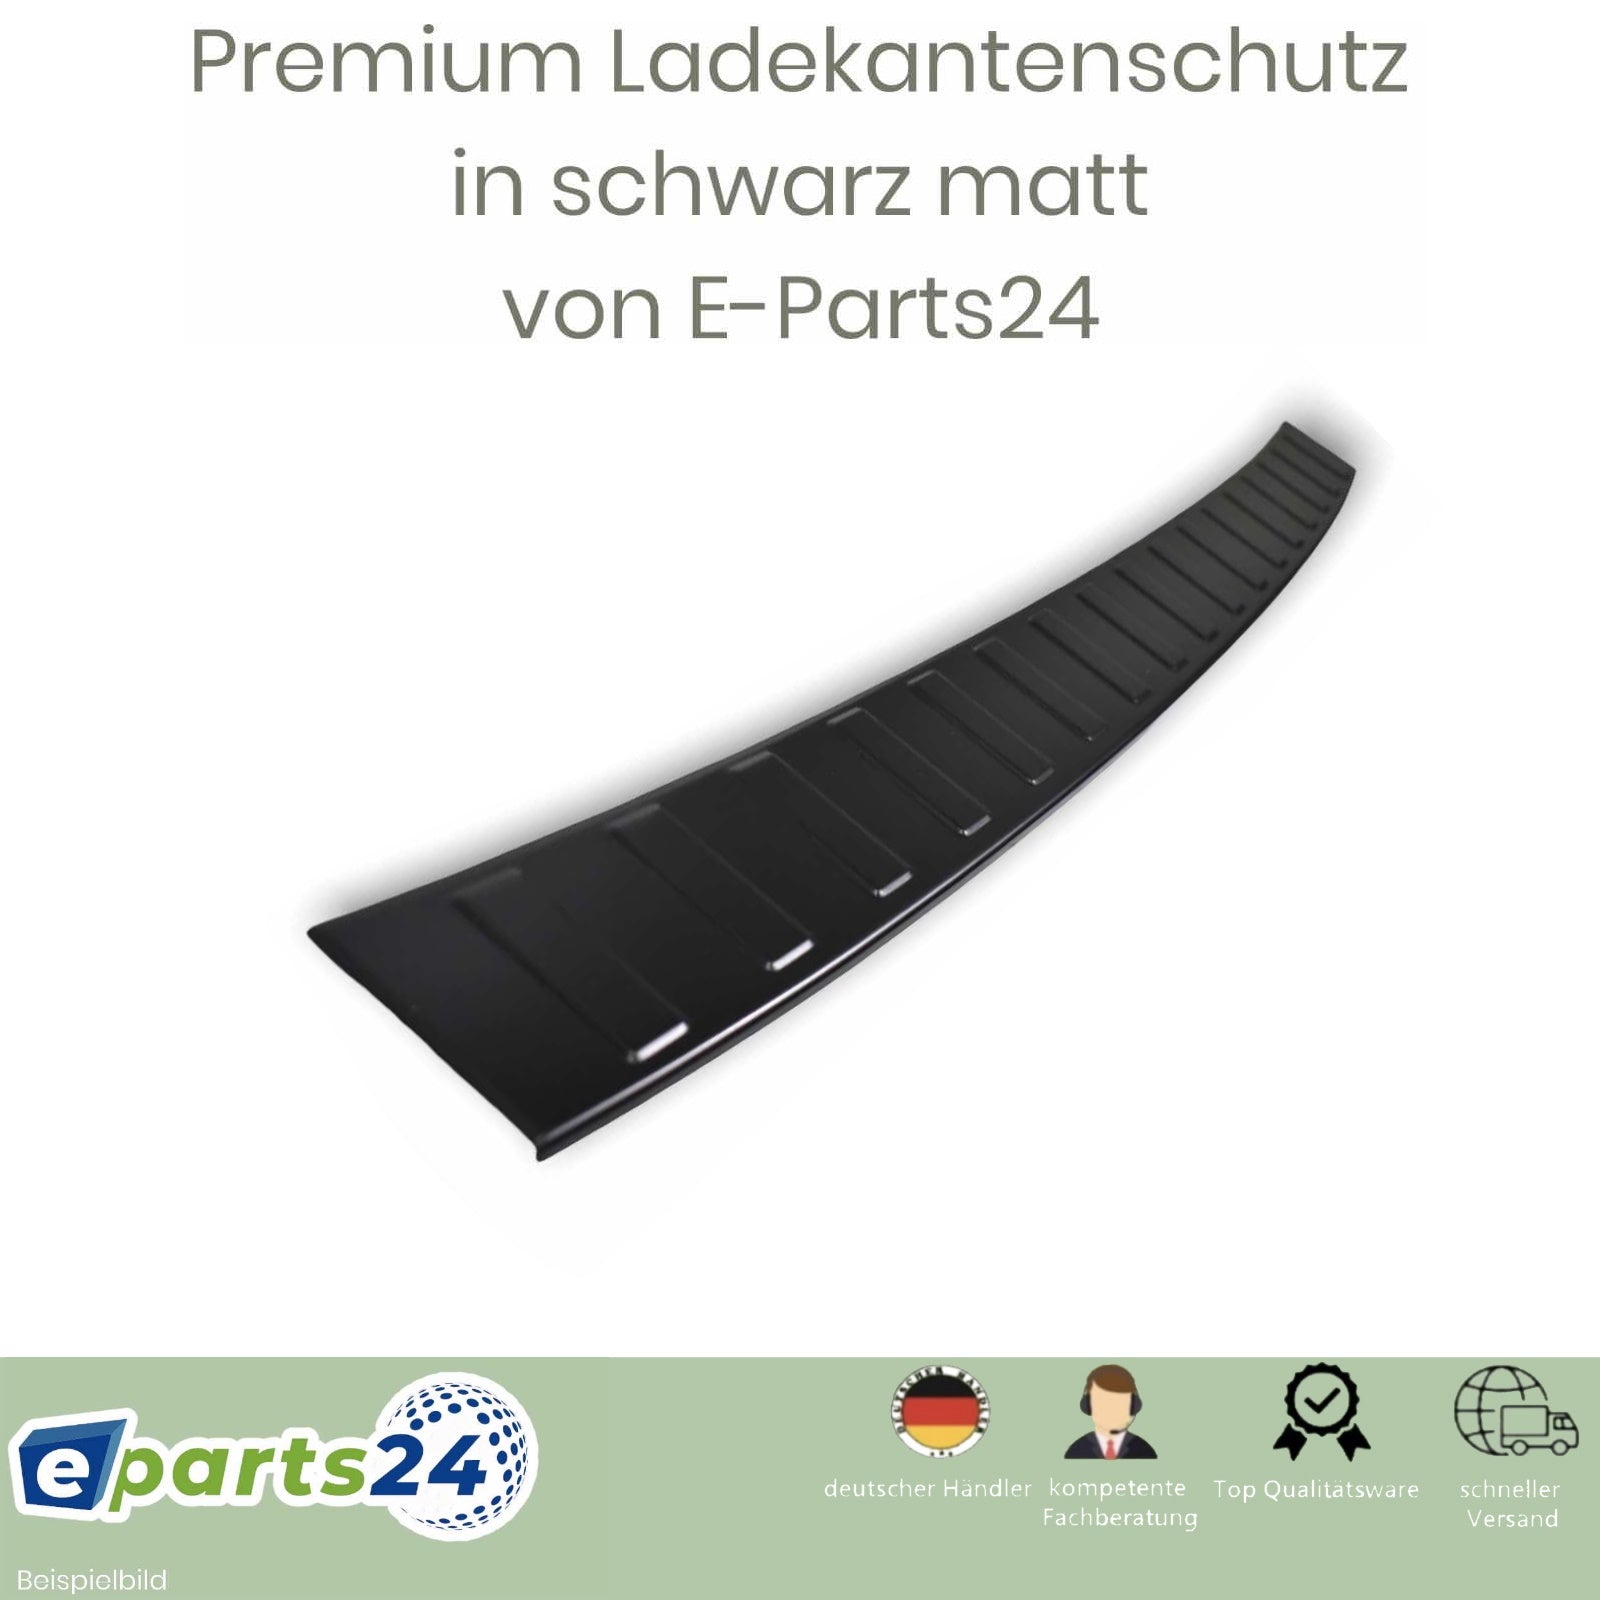 schwarz E-Parts24 matt ab Seat für 2018- – Ladekantenschutz Heckschutz Tarraco pul